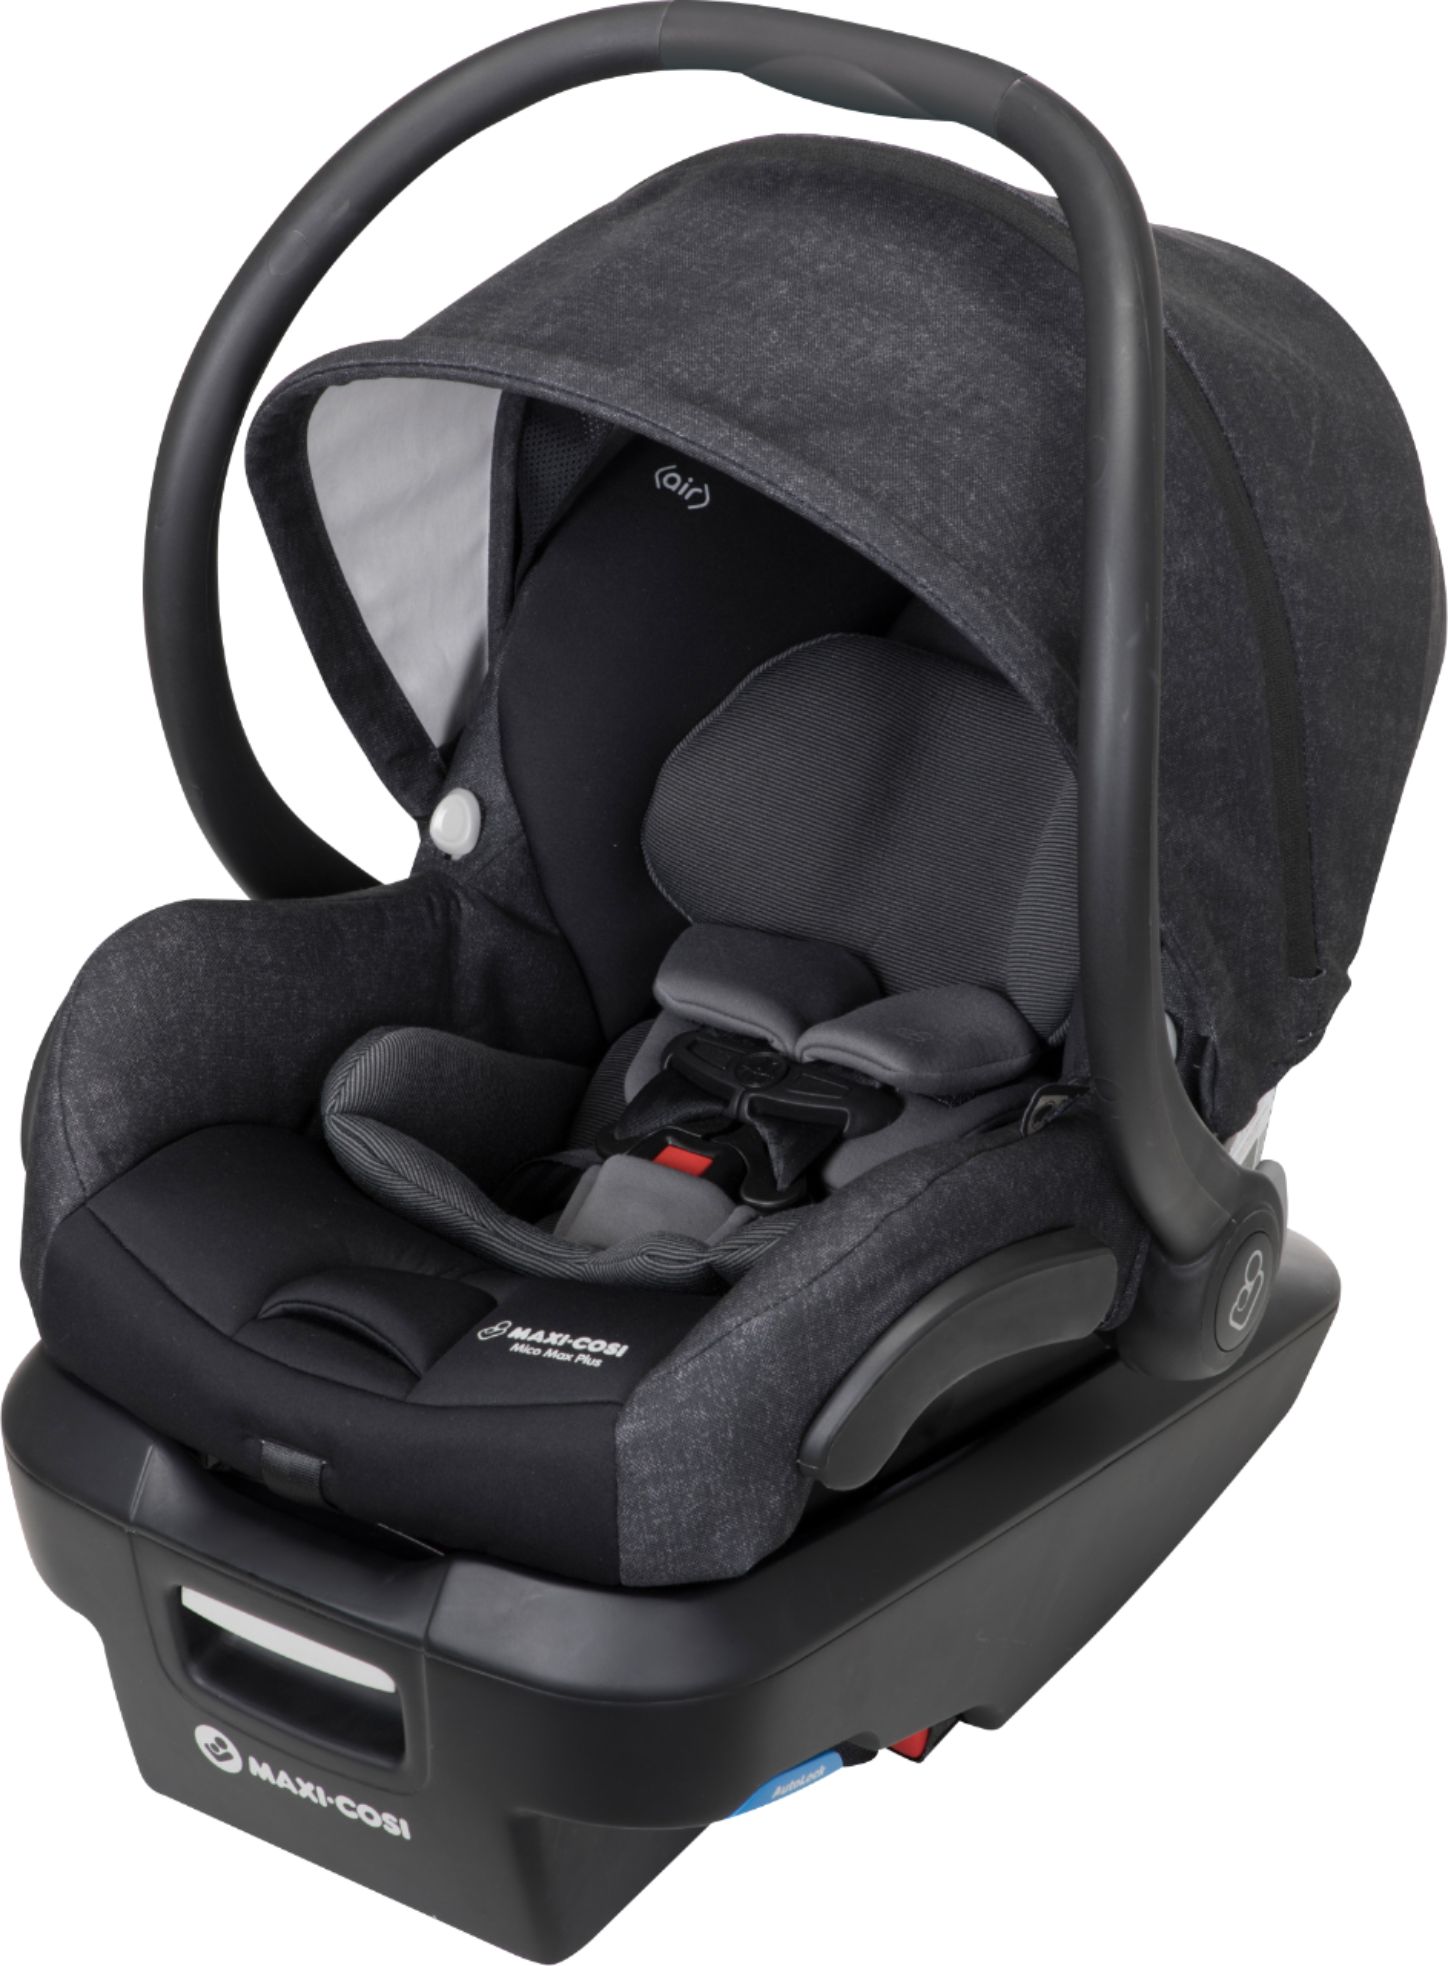 Left View: Maxi-Cosi - Mico Max Plus Infant Car Seat - Black